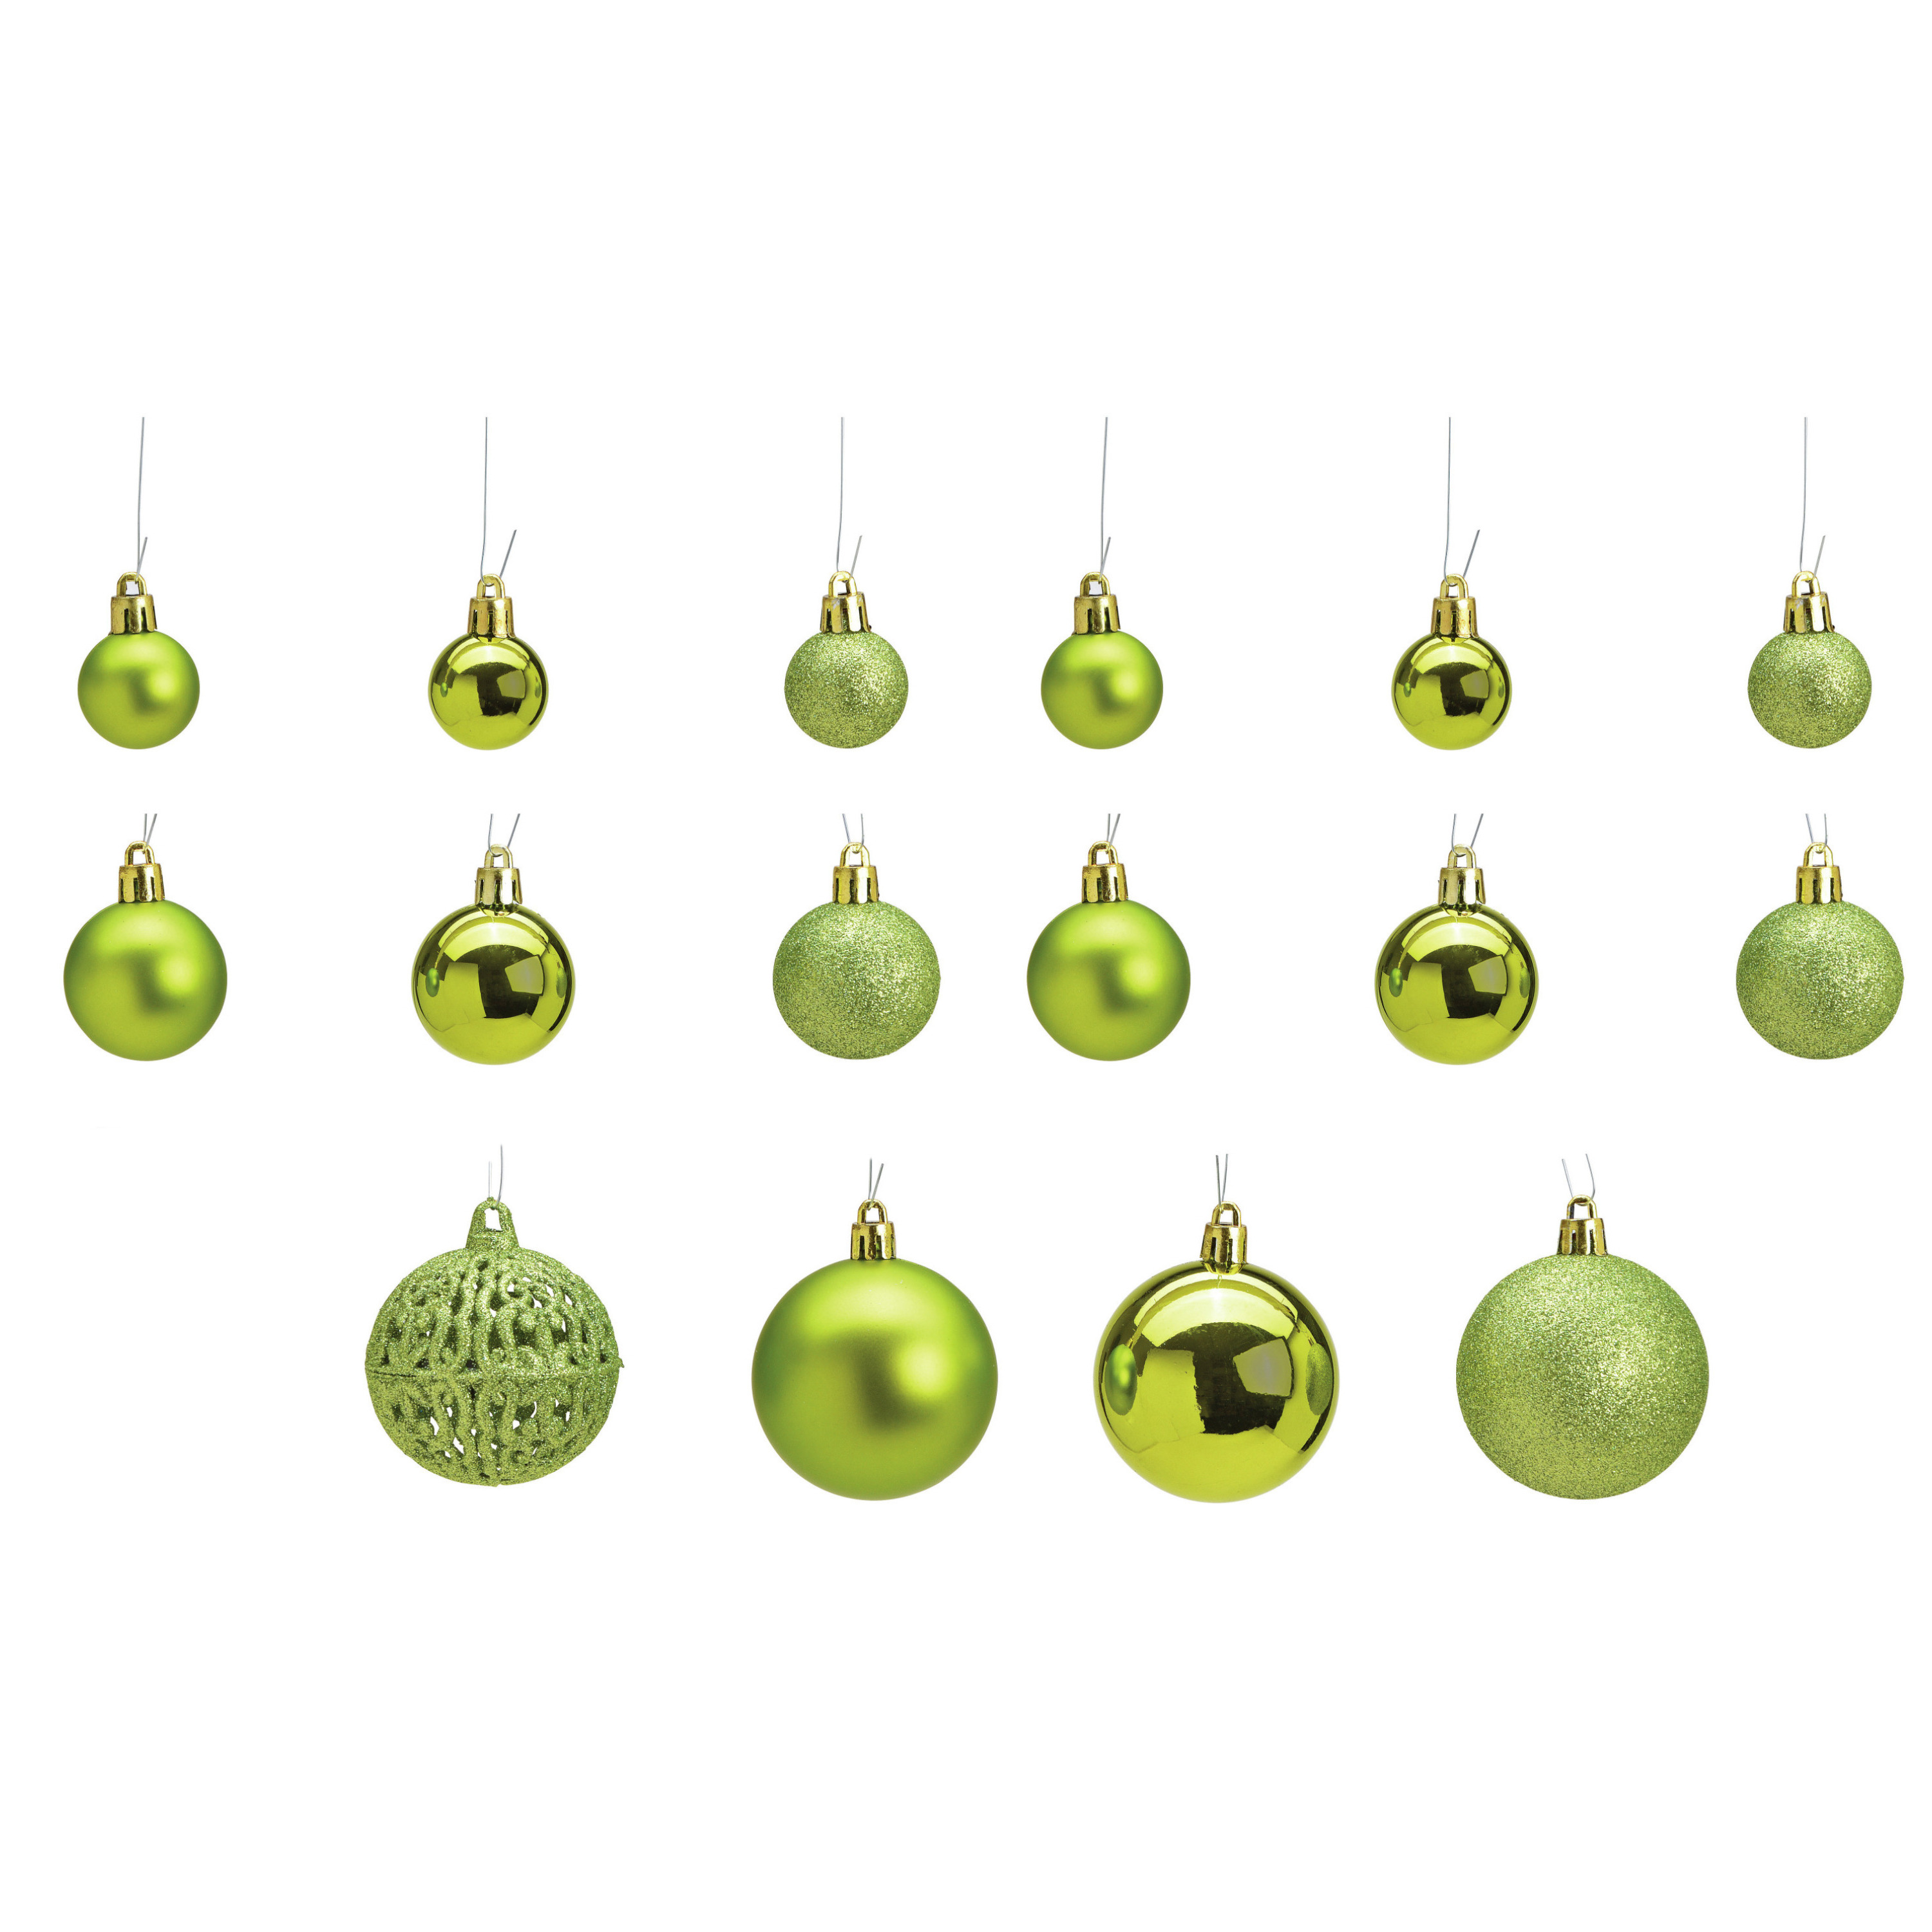 50x stuks kunststof kerstballen lime groen 3, 4 en 6 cm